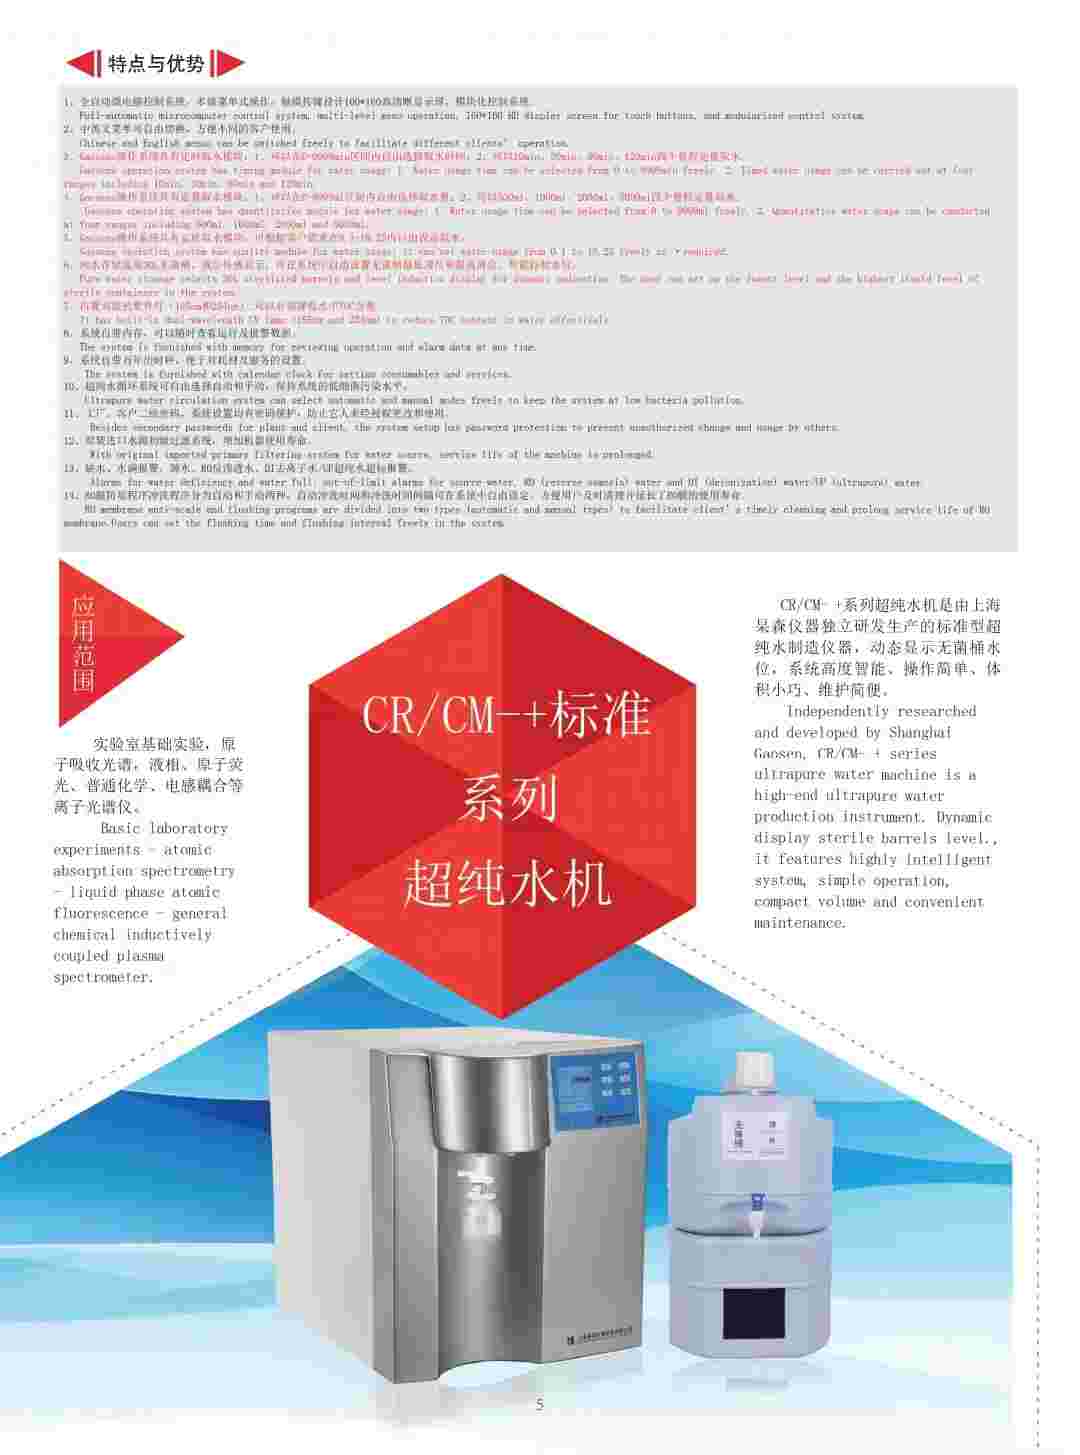 上海杲森CR标准系列超纯水机科研实验室超纯水制备